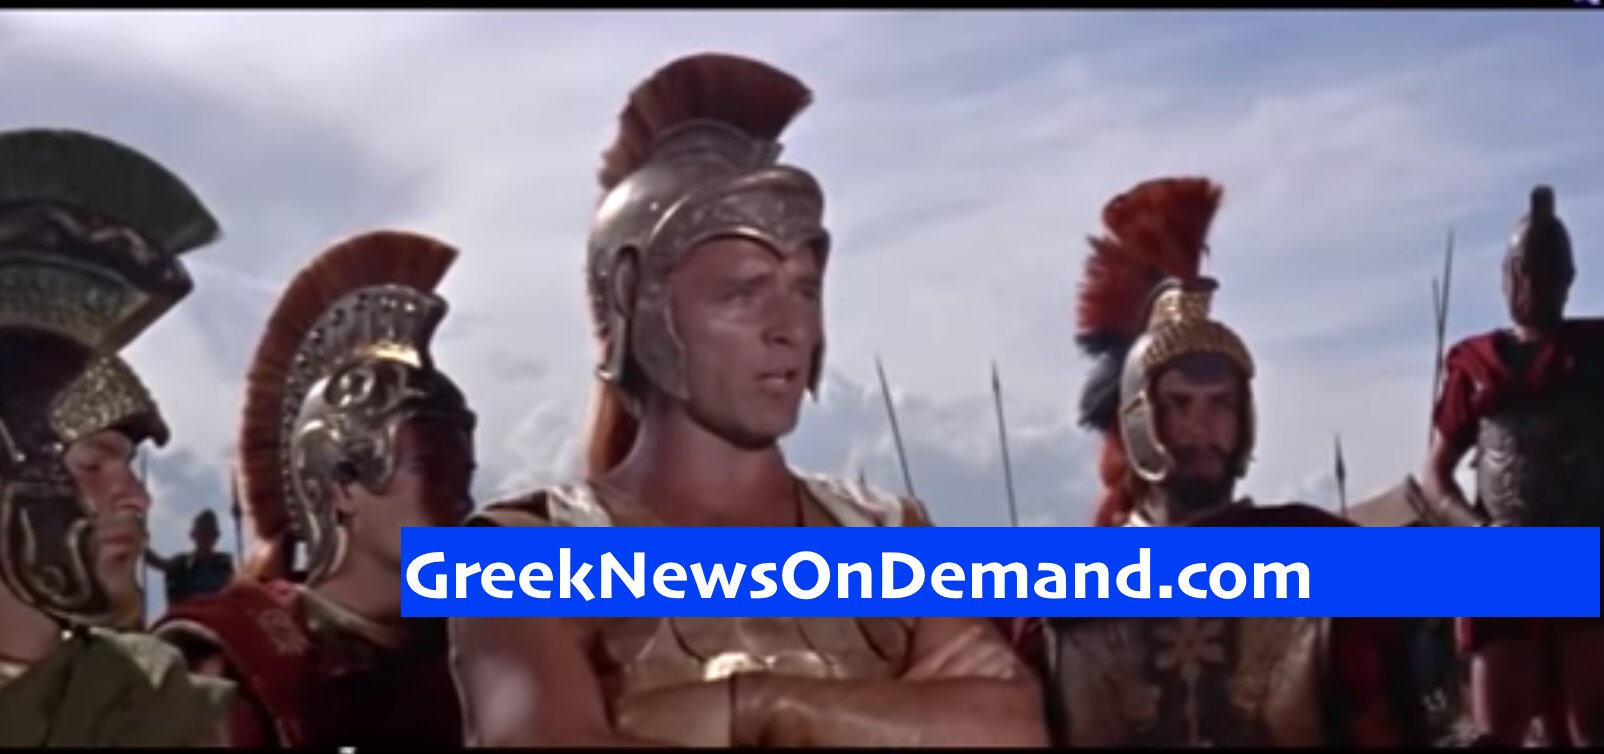 Χόλιγουντ: «Ιδού ο Μέγας Αλέξανδρος της Μακεδονίας, ο Αλέξανδρος της ΕΛΛΑΔΟΣ!»